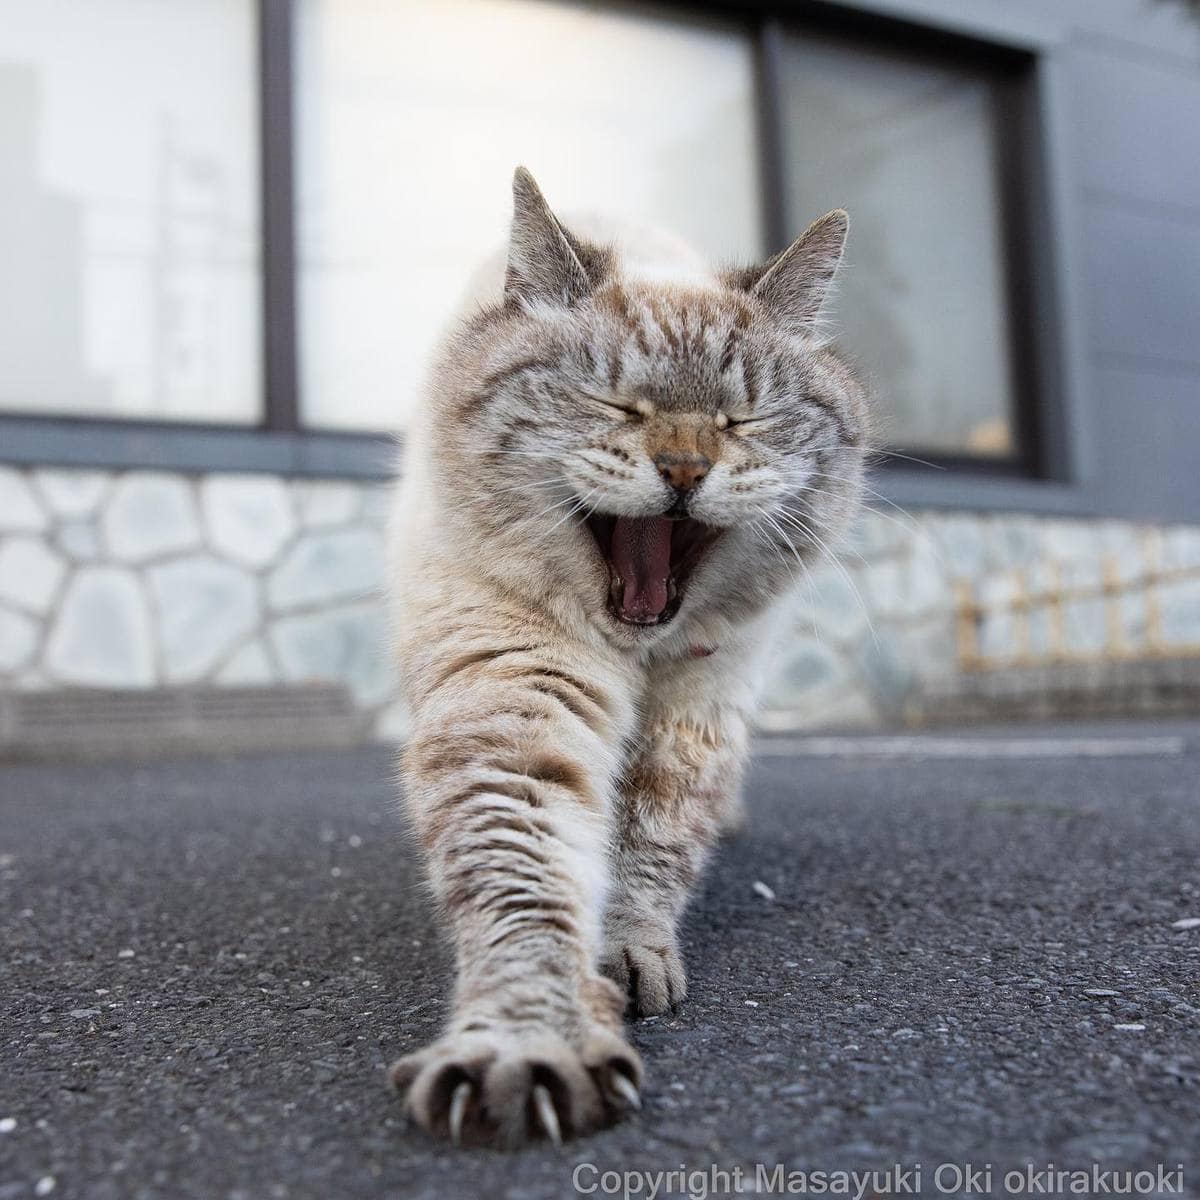 20 снимков уличных котов от японского фотографа, который как никто умеет запечатлевать харизму этих бродяг 72